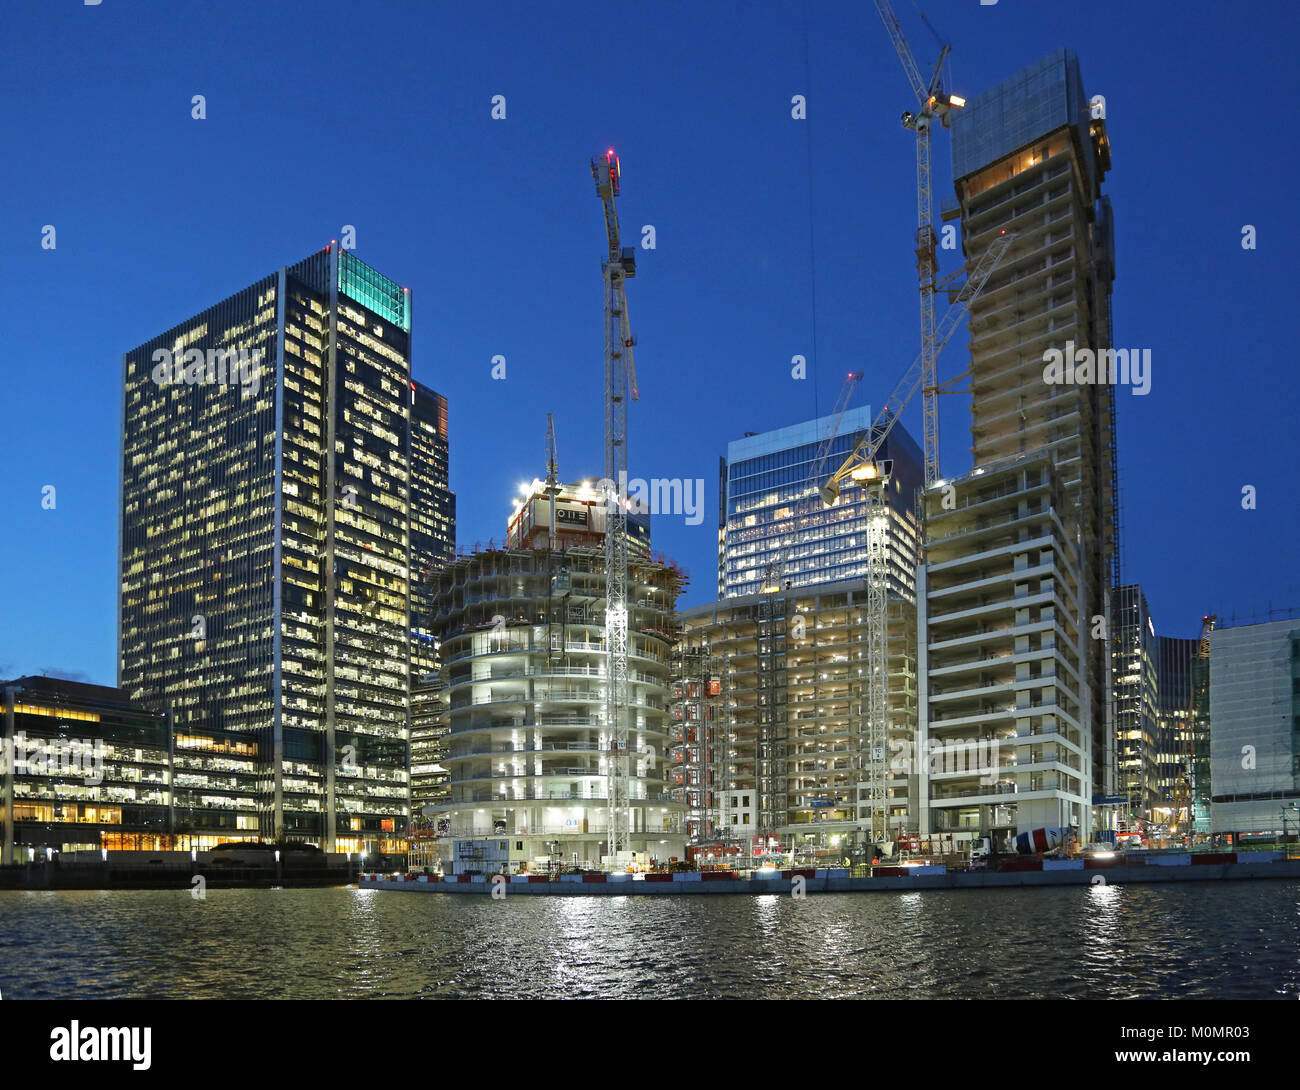 Dämmerung Blick auf den Bau von neuen Wohntürmen im Londoner Stadtteil Canary Wharf. Zeigt eine Park Drive Entwicklung im Zentrum. Stockfoto